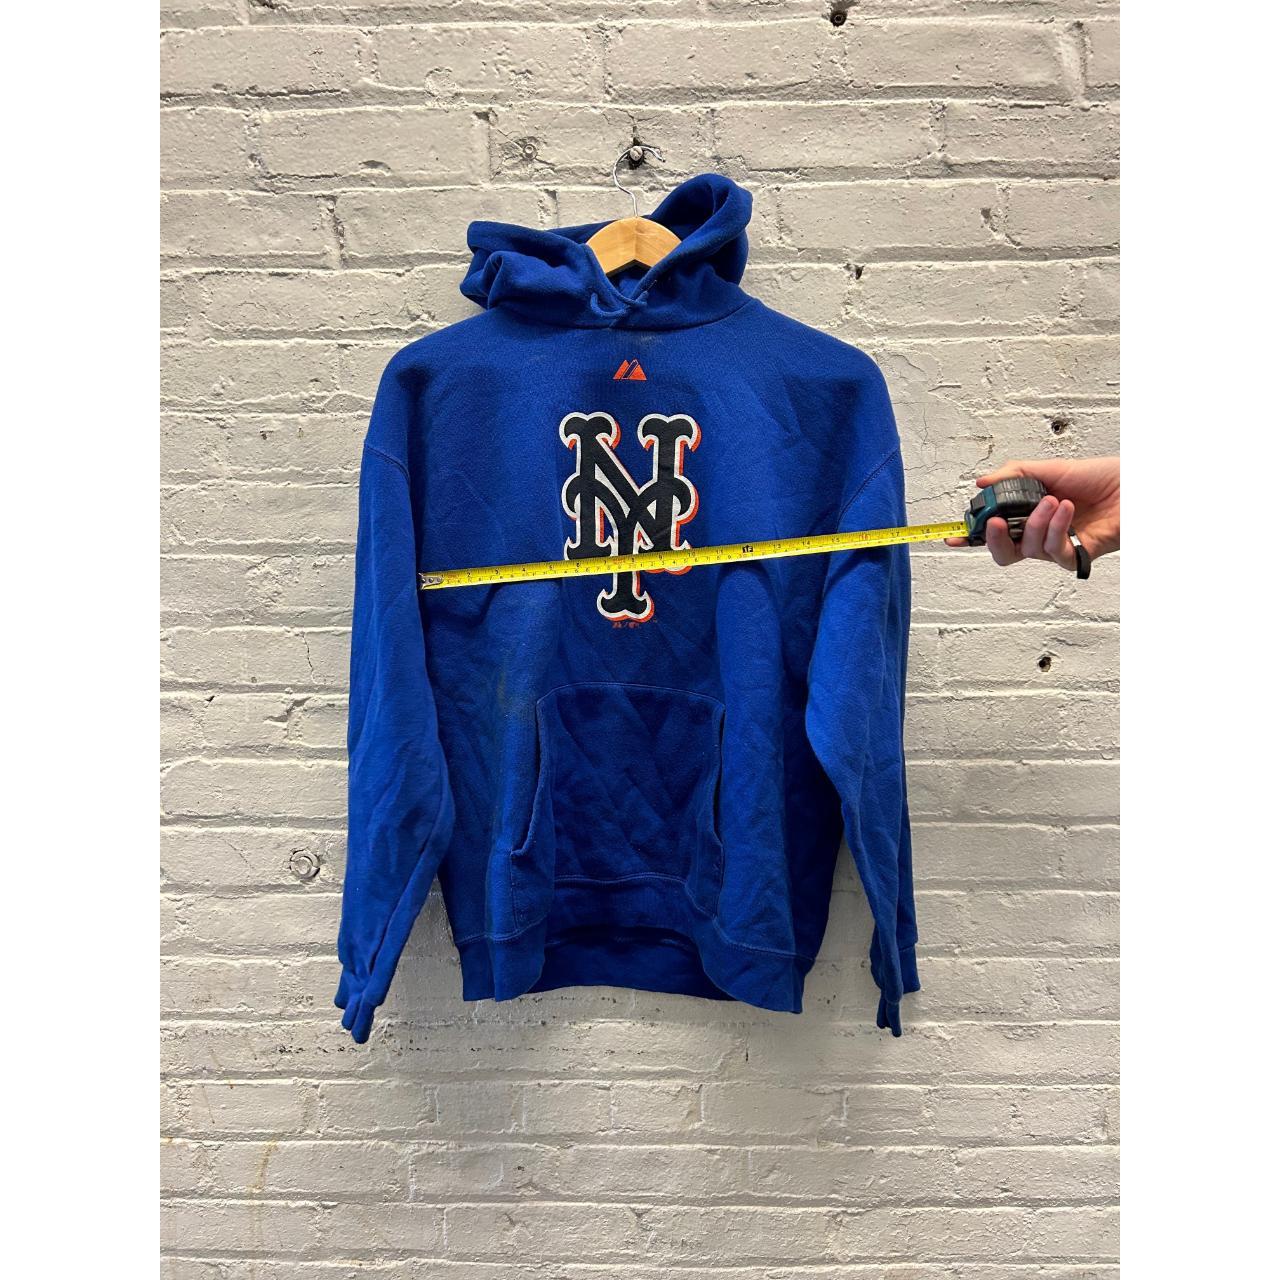 Mets NY baseball sweatshirt hoodie Worn but in good - Depop